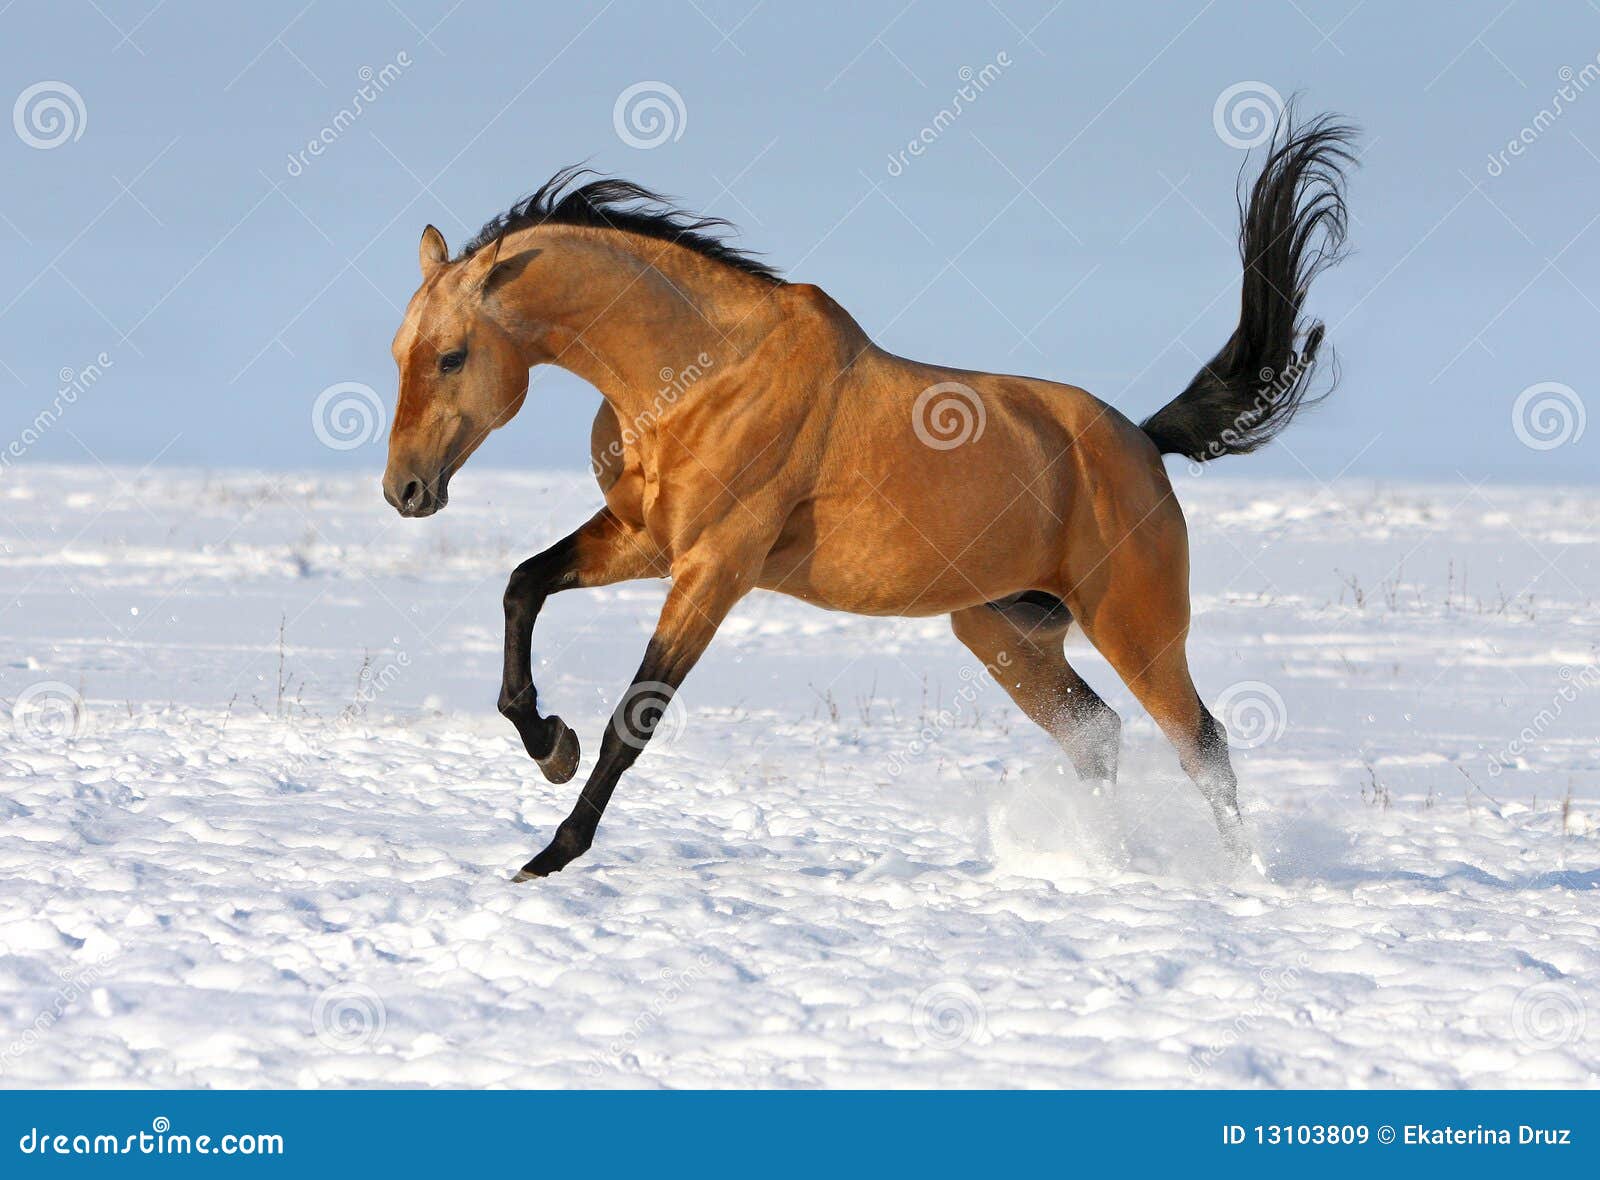 golden-akhalteke-stallion-running-13103809.jpg